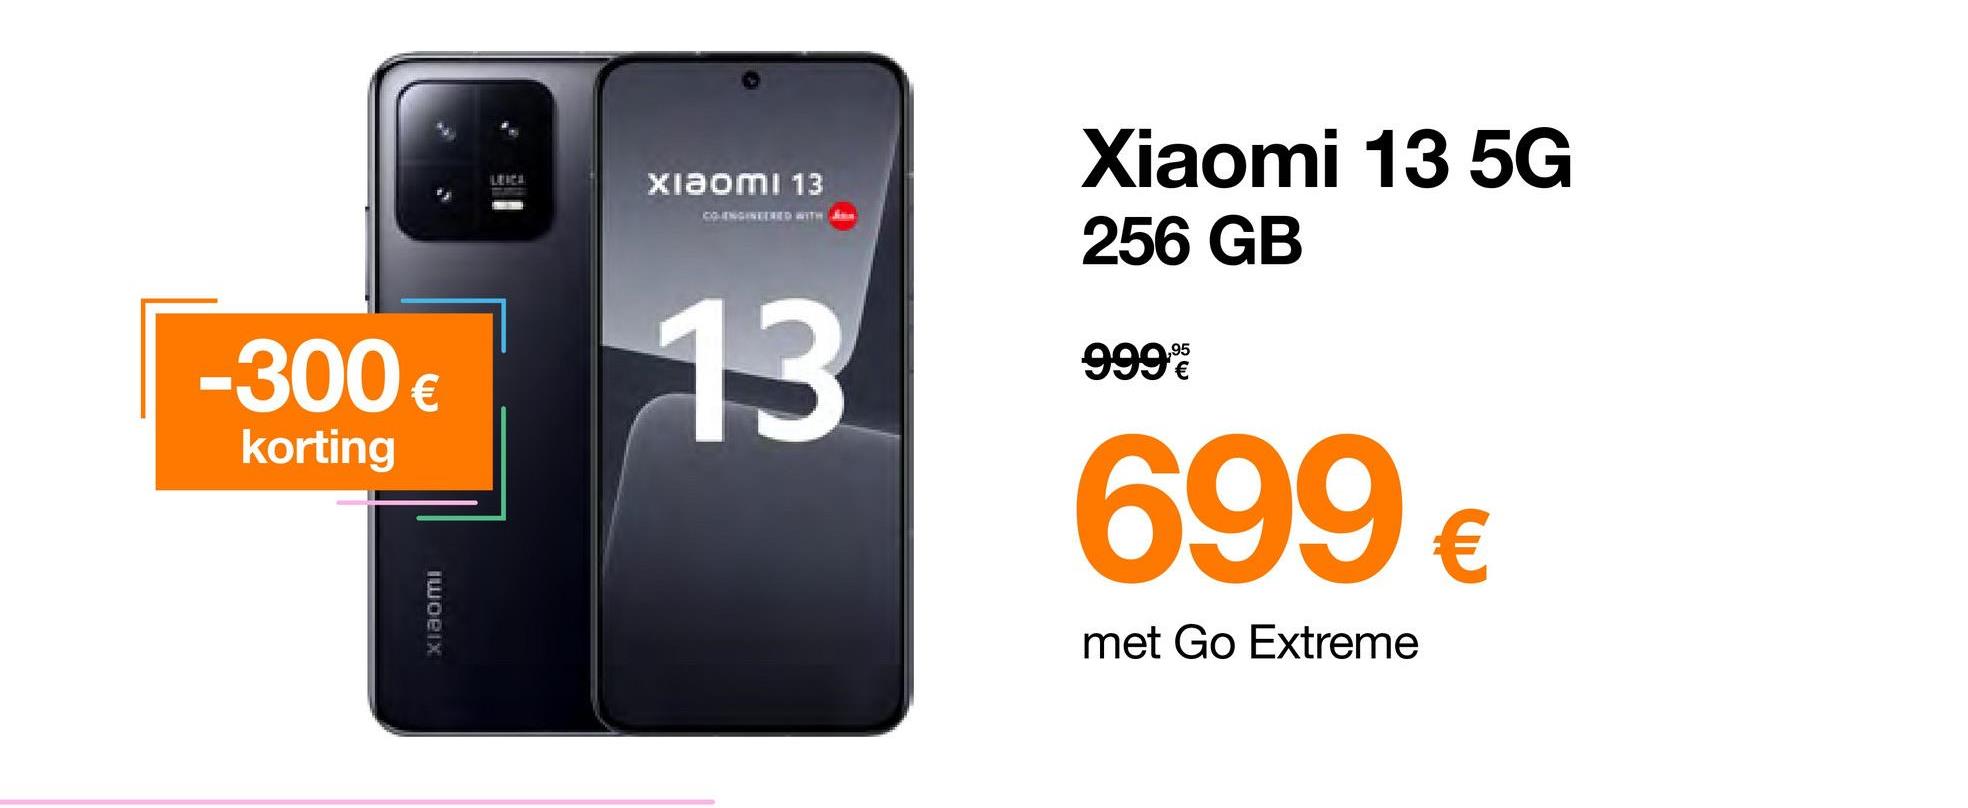 -300 €
korting
iwoeix
Xiaomi 13
COLENGINEERED WITH
13
Xiaomi 13 5G
256 GB
999%
699 €
met Go Extreme